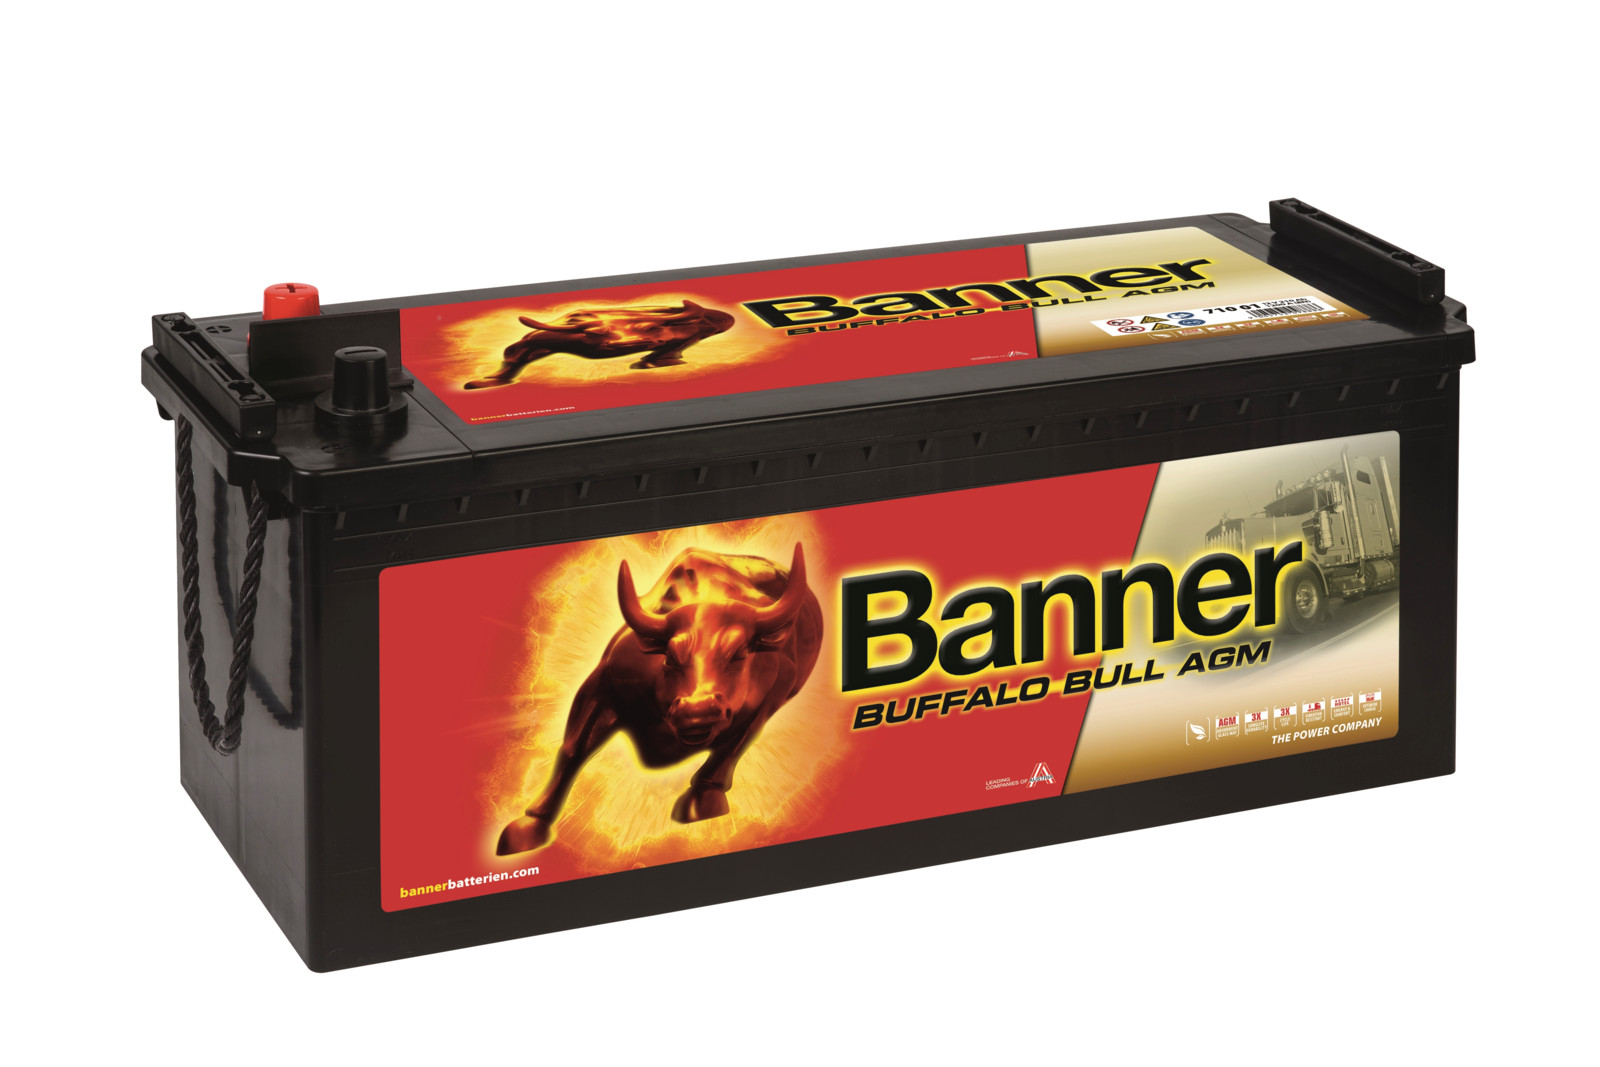 Mit der neuen Buffalo Bull AGM verspricht Banner „optimale Power für Fernverkehrs-Laster“.